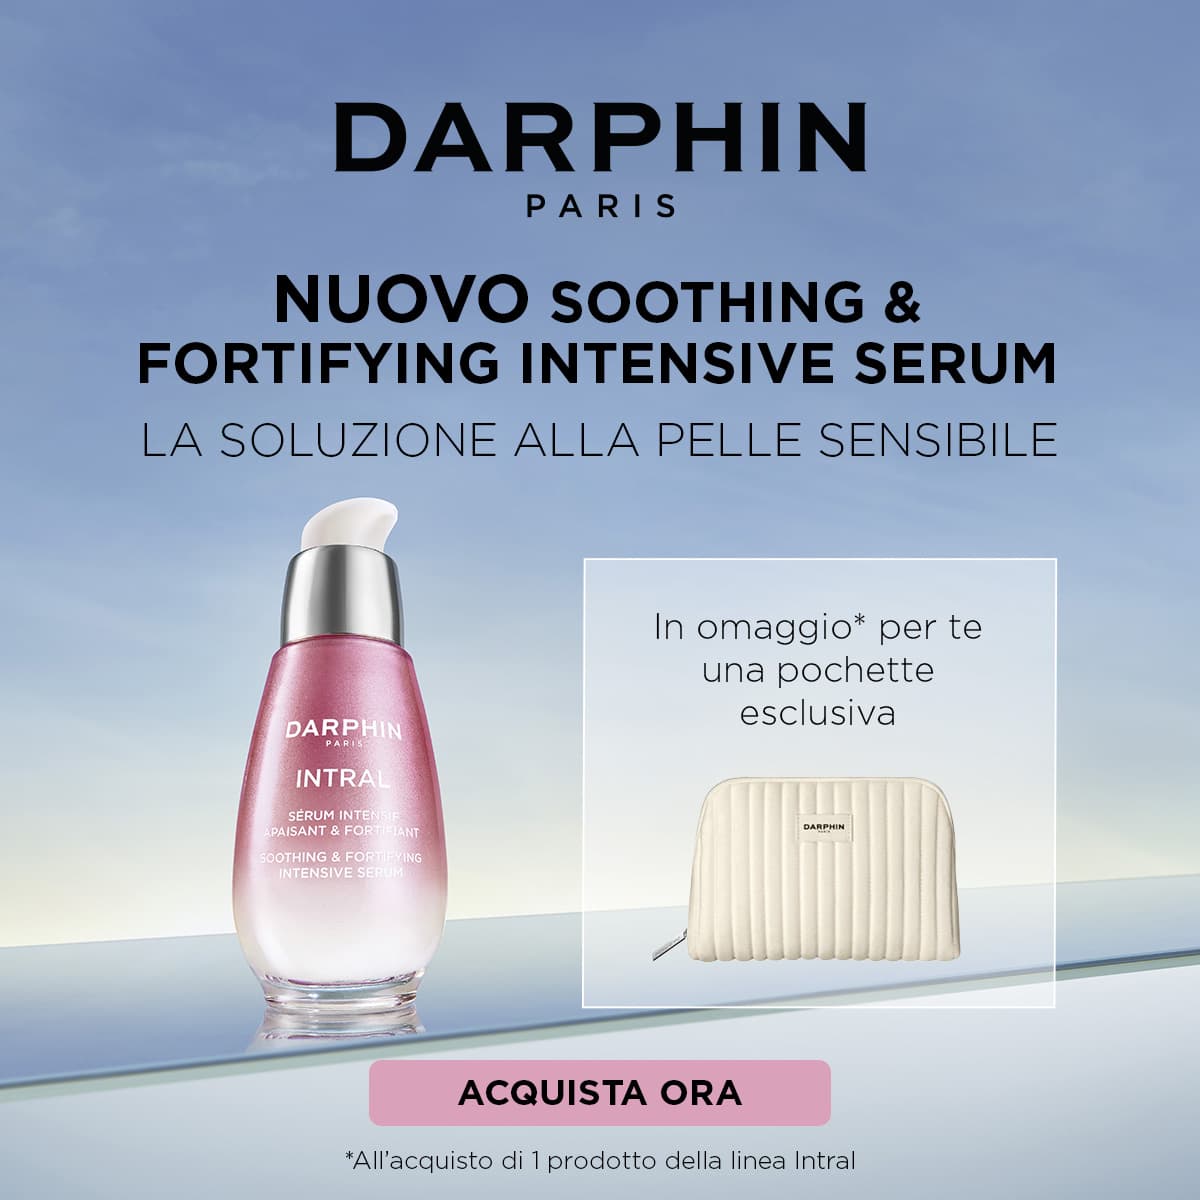 Darphin: Acquista 1 prodotto Intral, ricevi in omaggio la pochette eslcusiva.